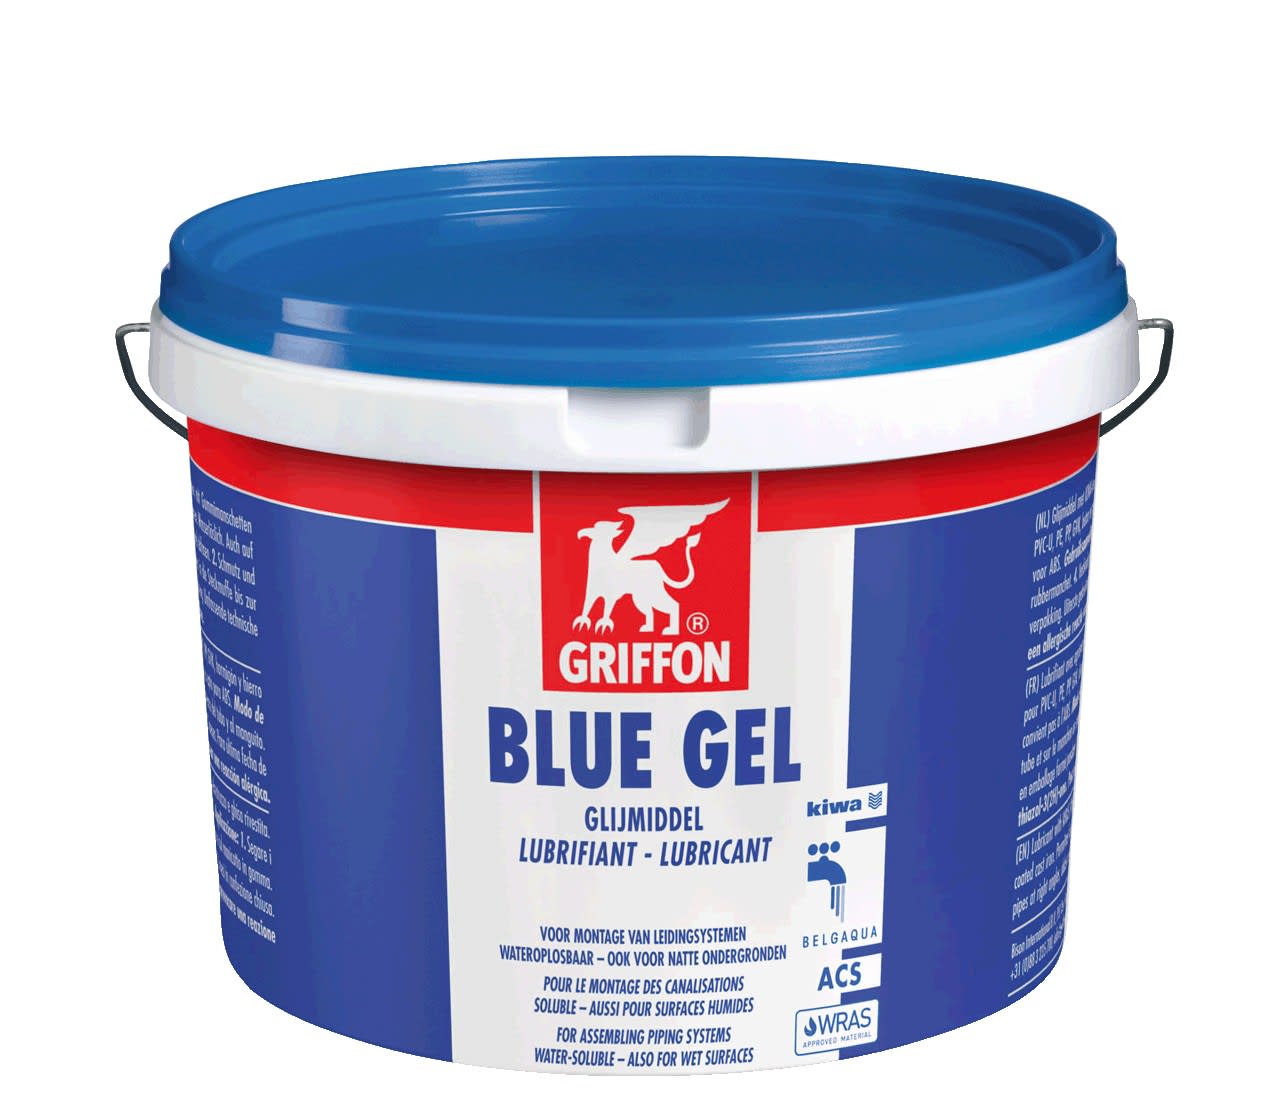 Griffon - BLUE GEL lubrifiant en gel pour les emboitements a joints 2,5 KG